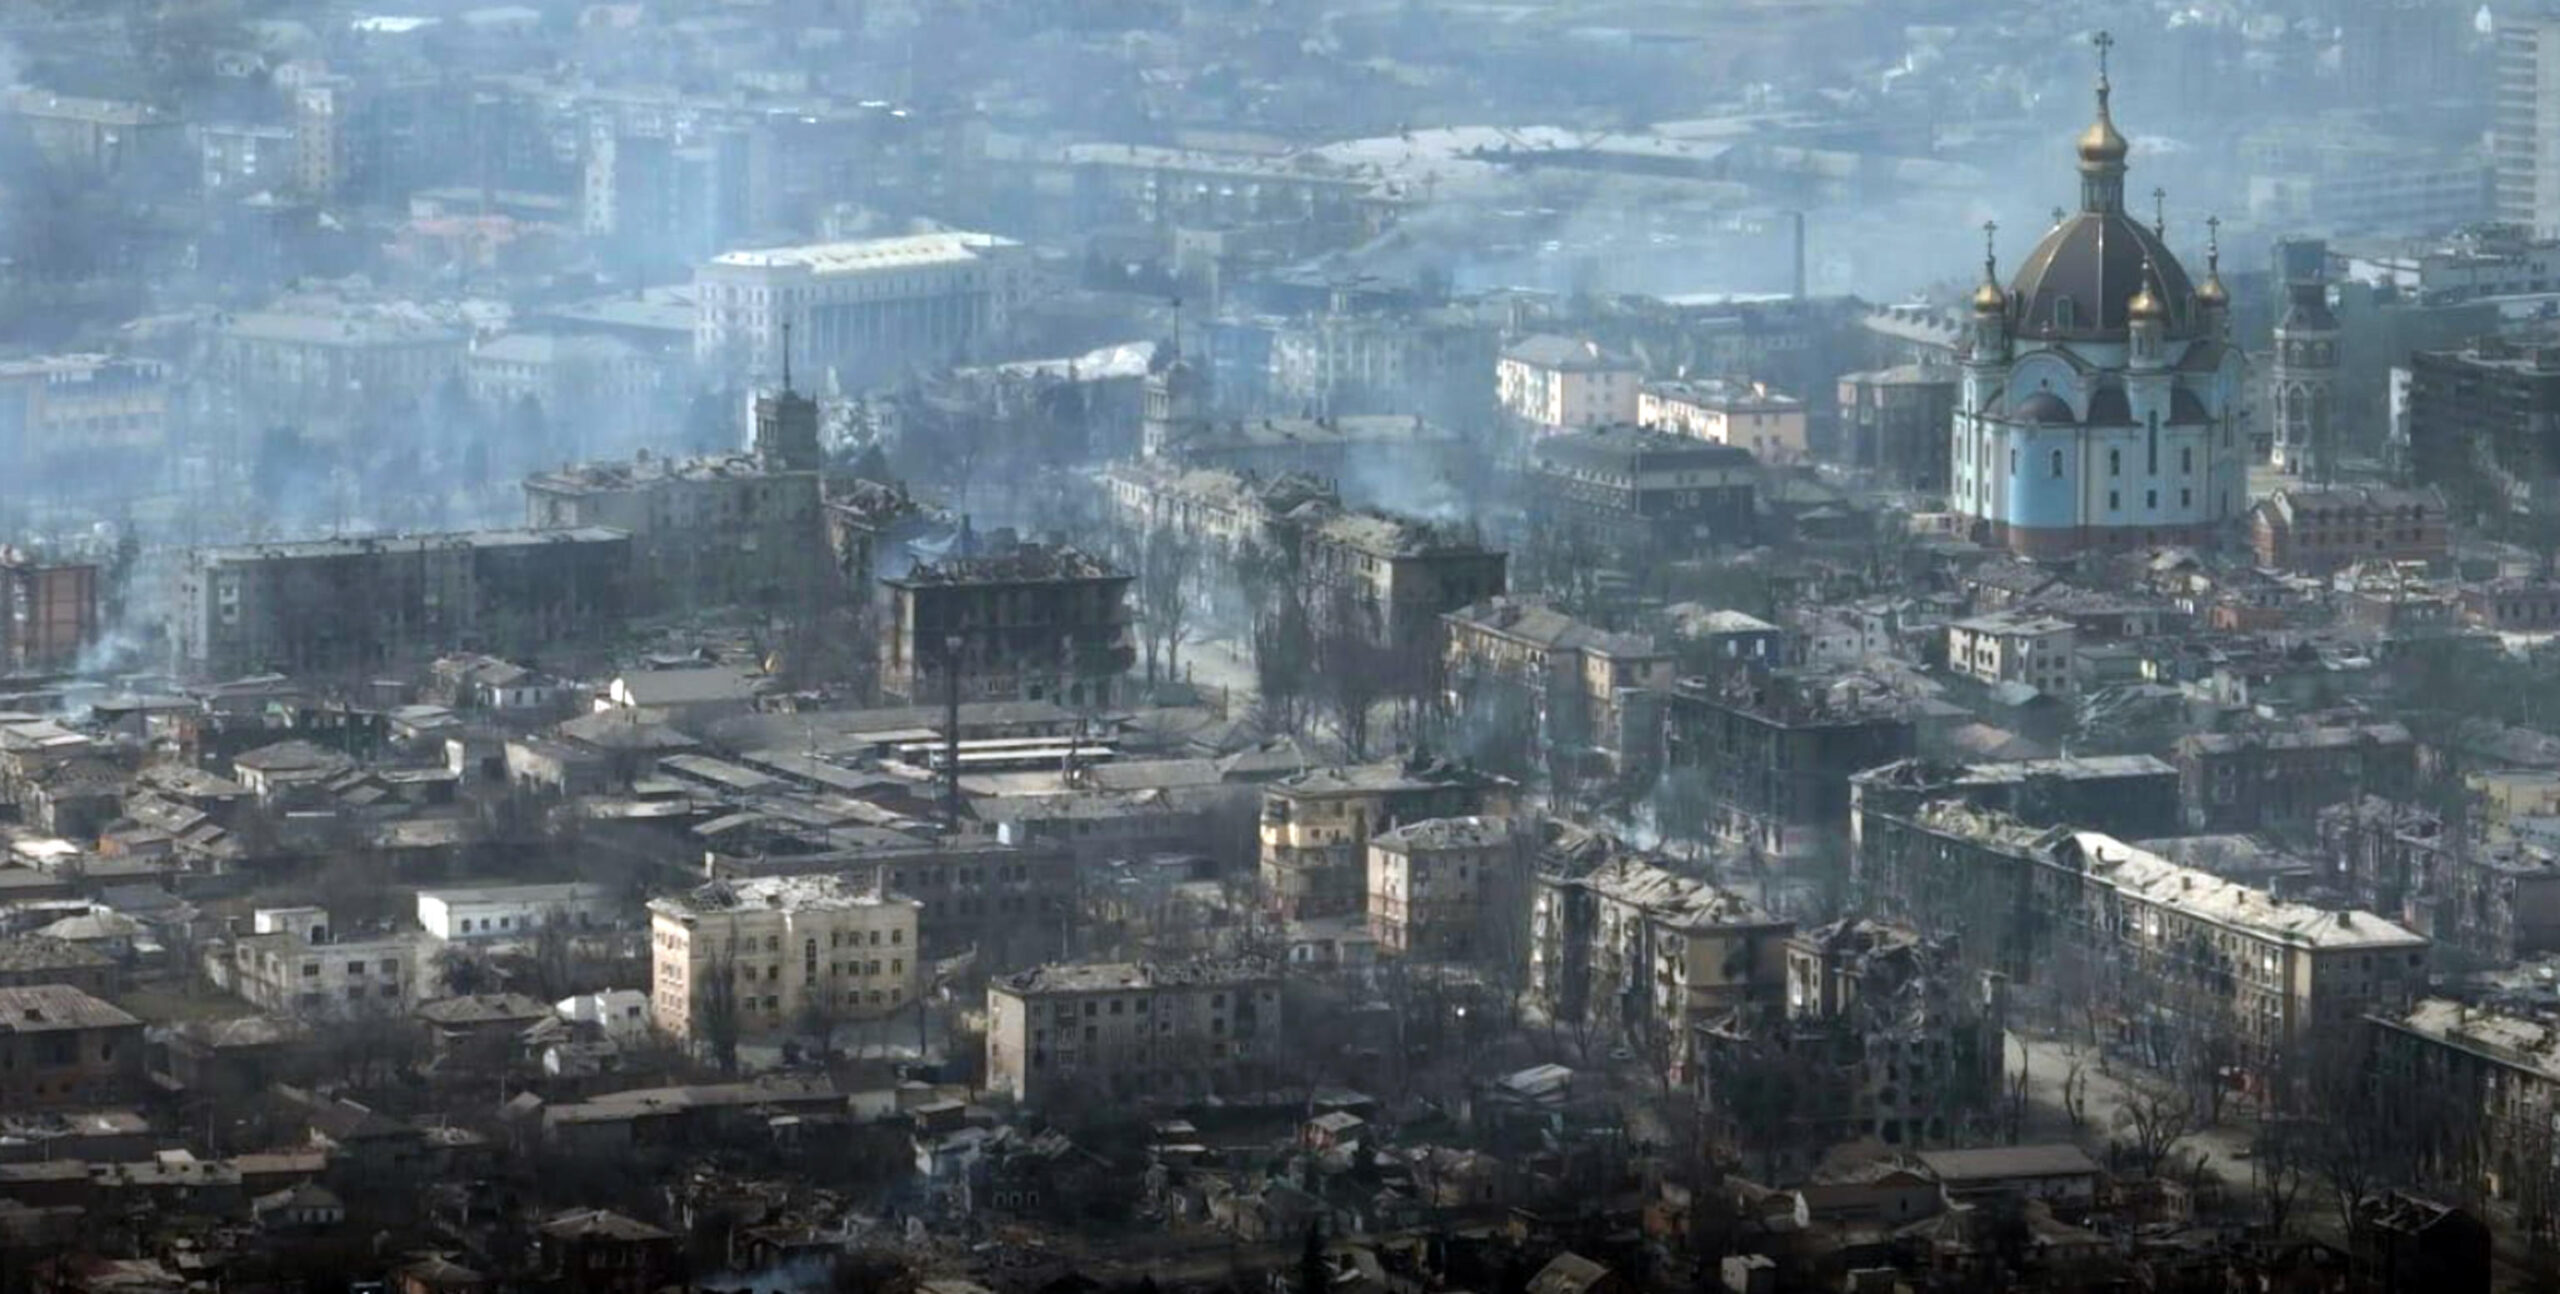 “Crisi umanitaria” a Mariupol. Da oggi nuovi negoziati Kiev-Mosca, Zelensky: “siamo pronti a neutralità”